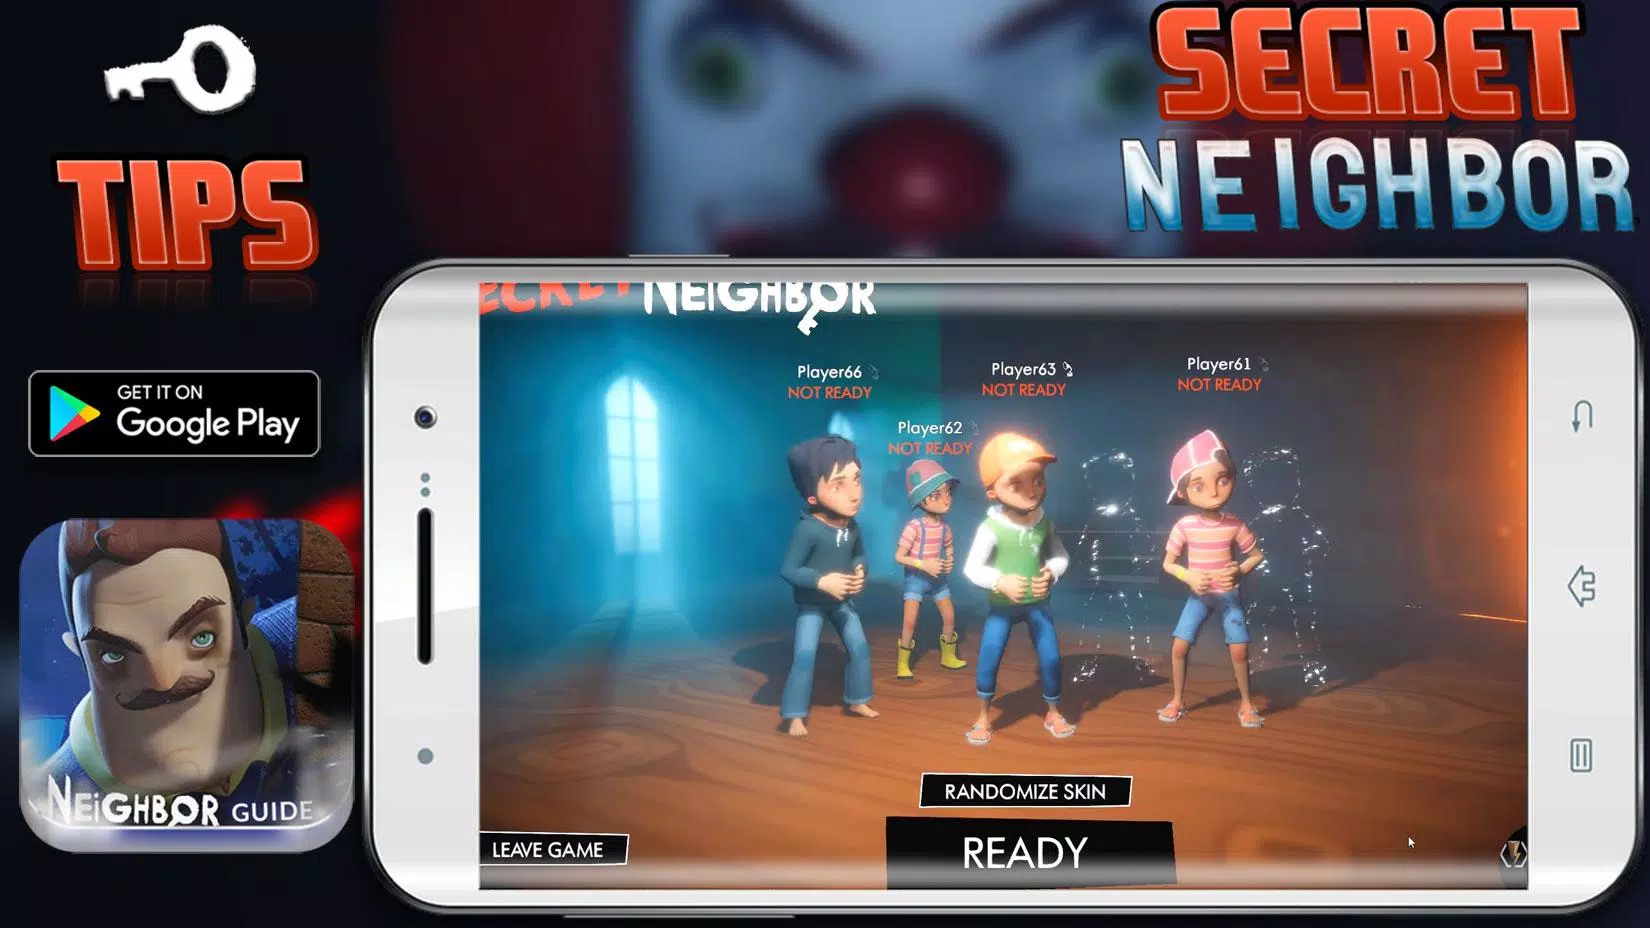 Secret Neighbor APK v1.3 Download (For Android)